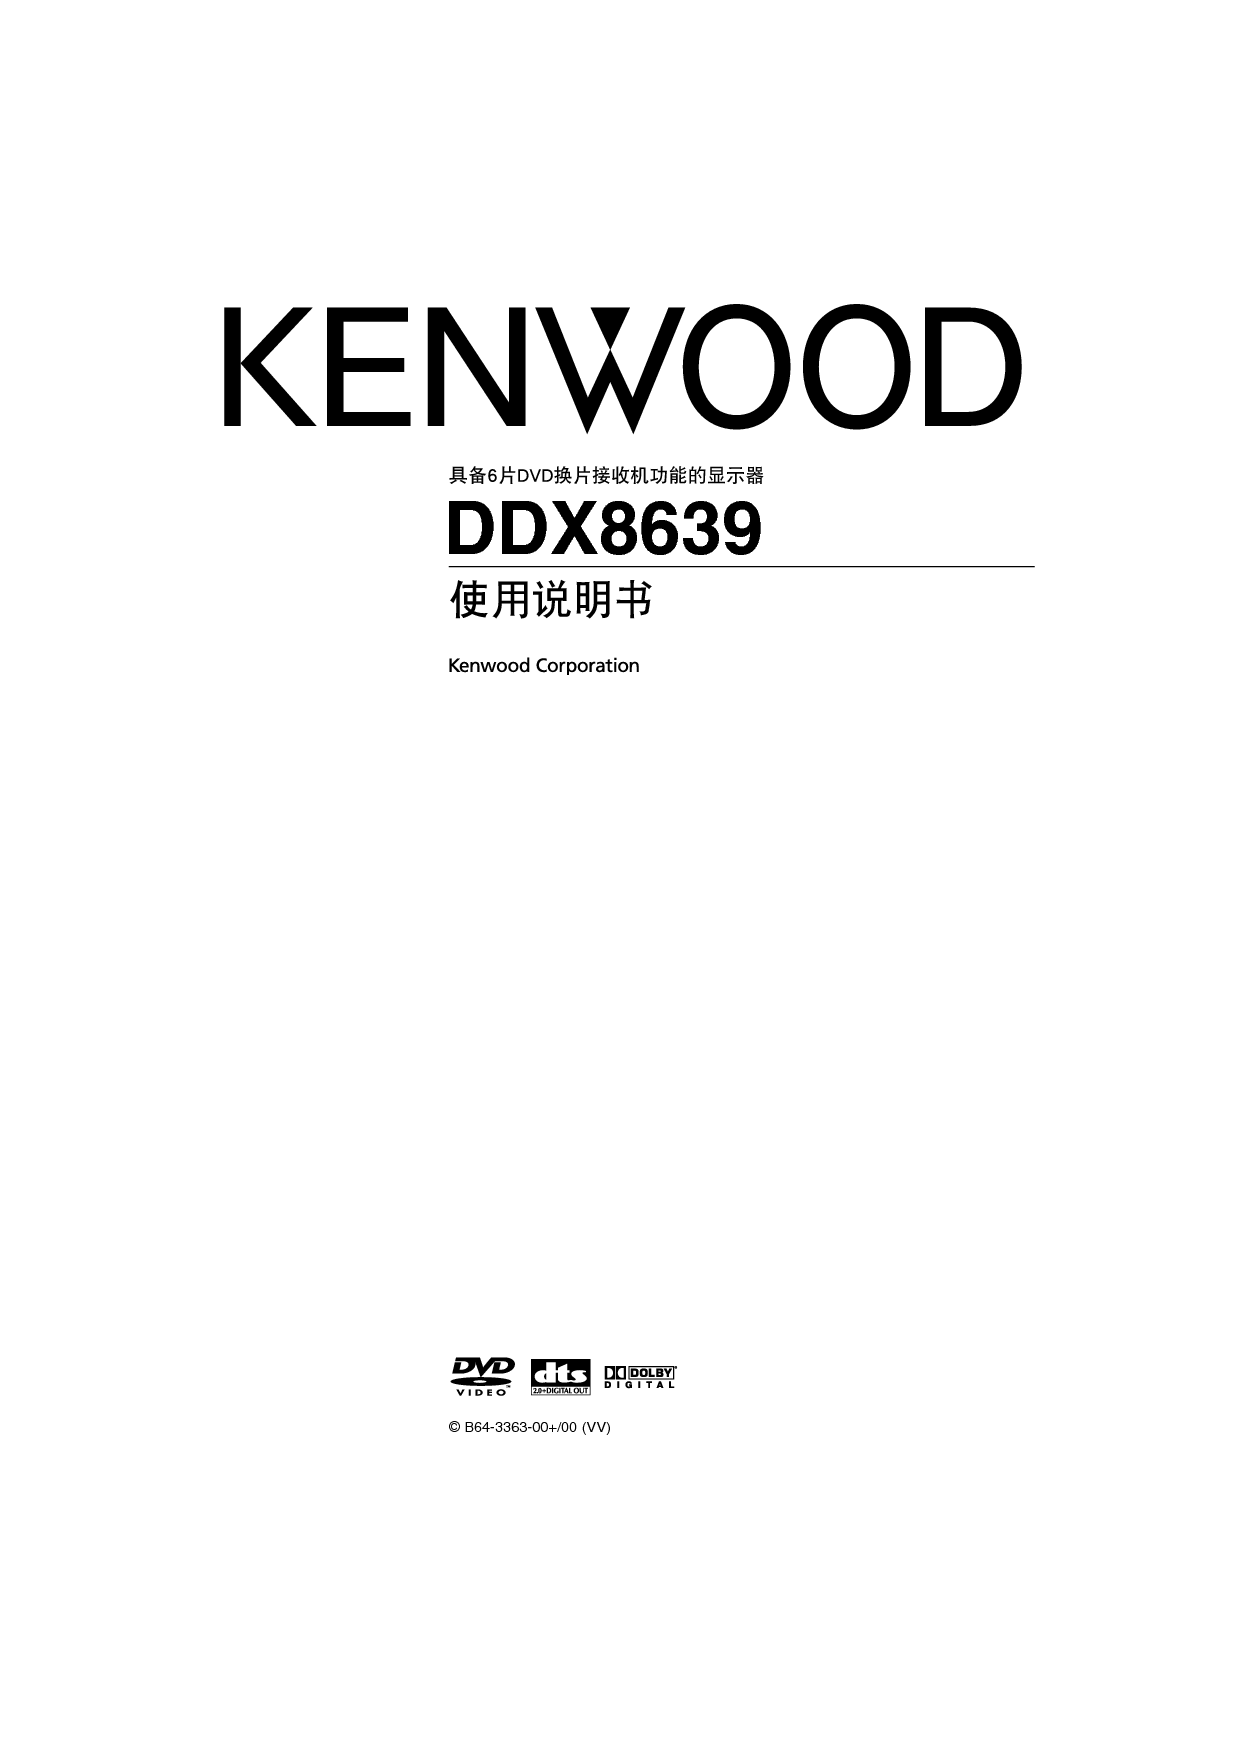 建伍 Kenwood DDX8639 使用说明书 封面